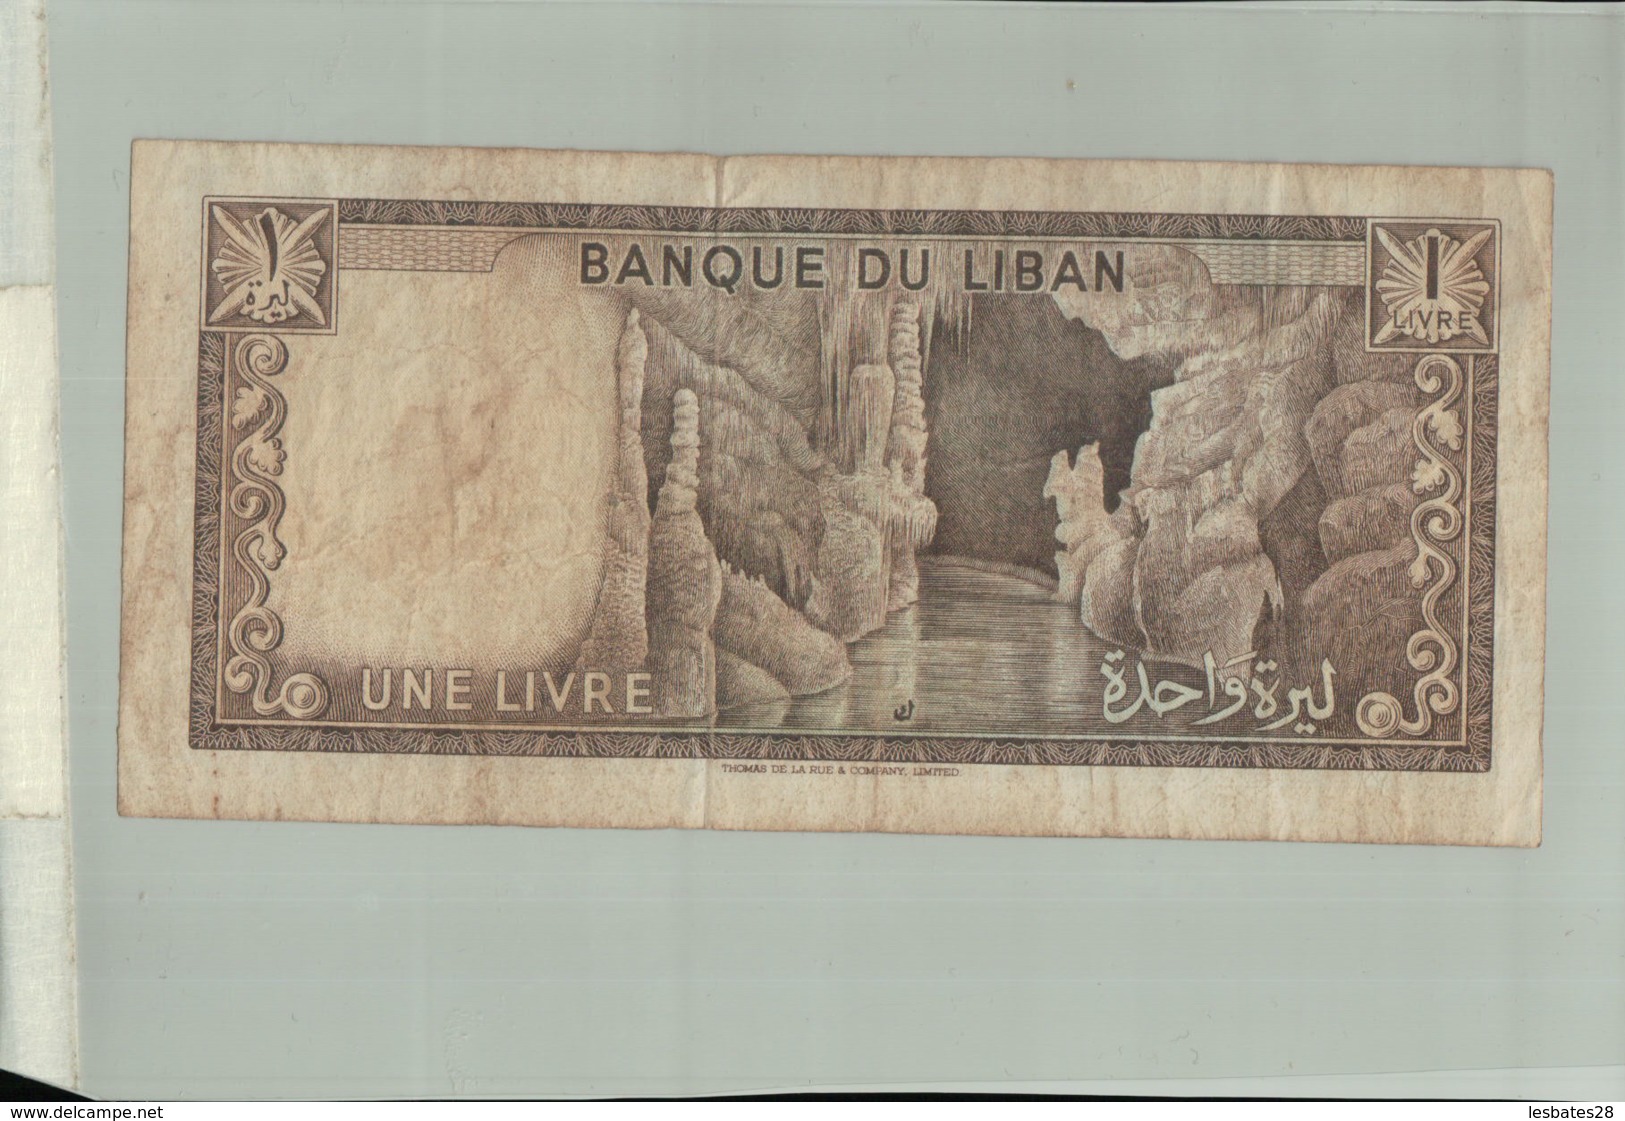 Billet De Banque: 1 Livre (Liban) (1964-1980) Période D'émission : 1964-Janv 2020  Clas Gera - Lebanon